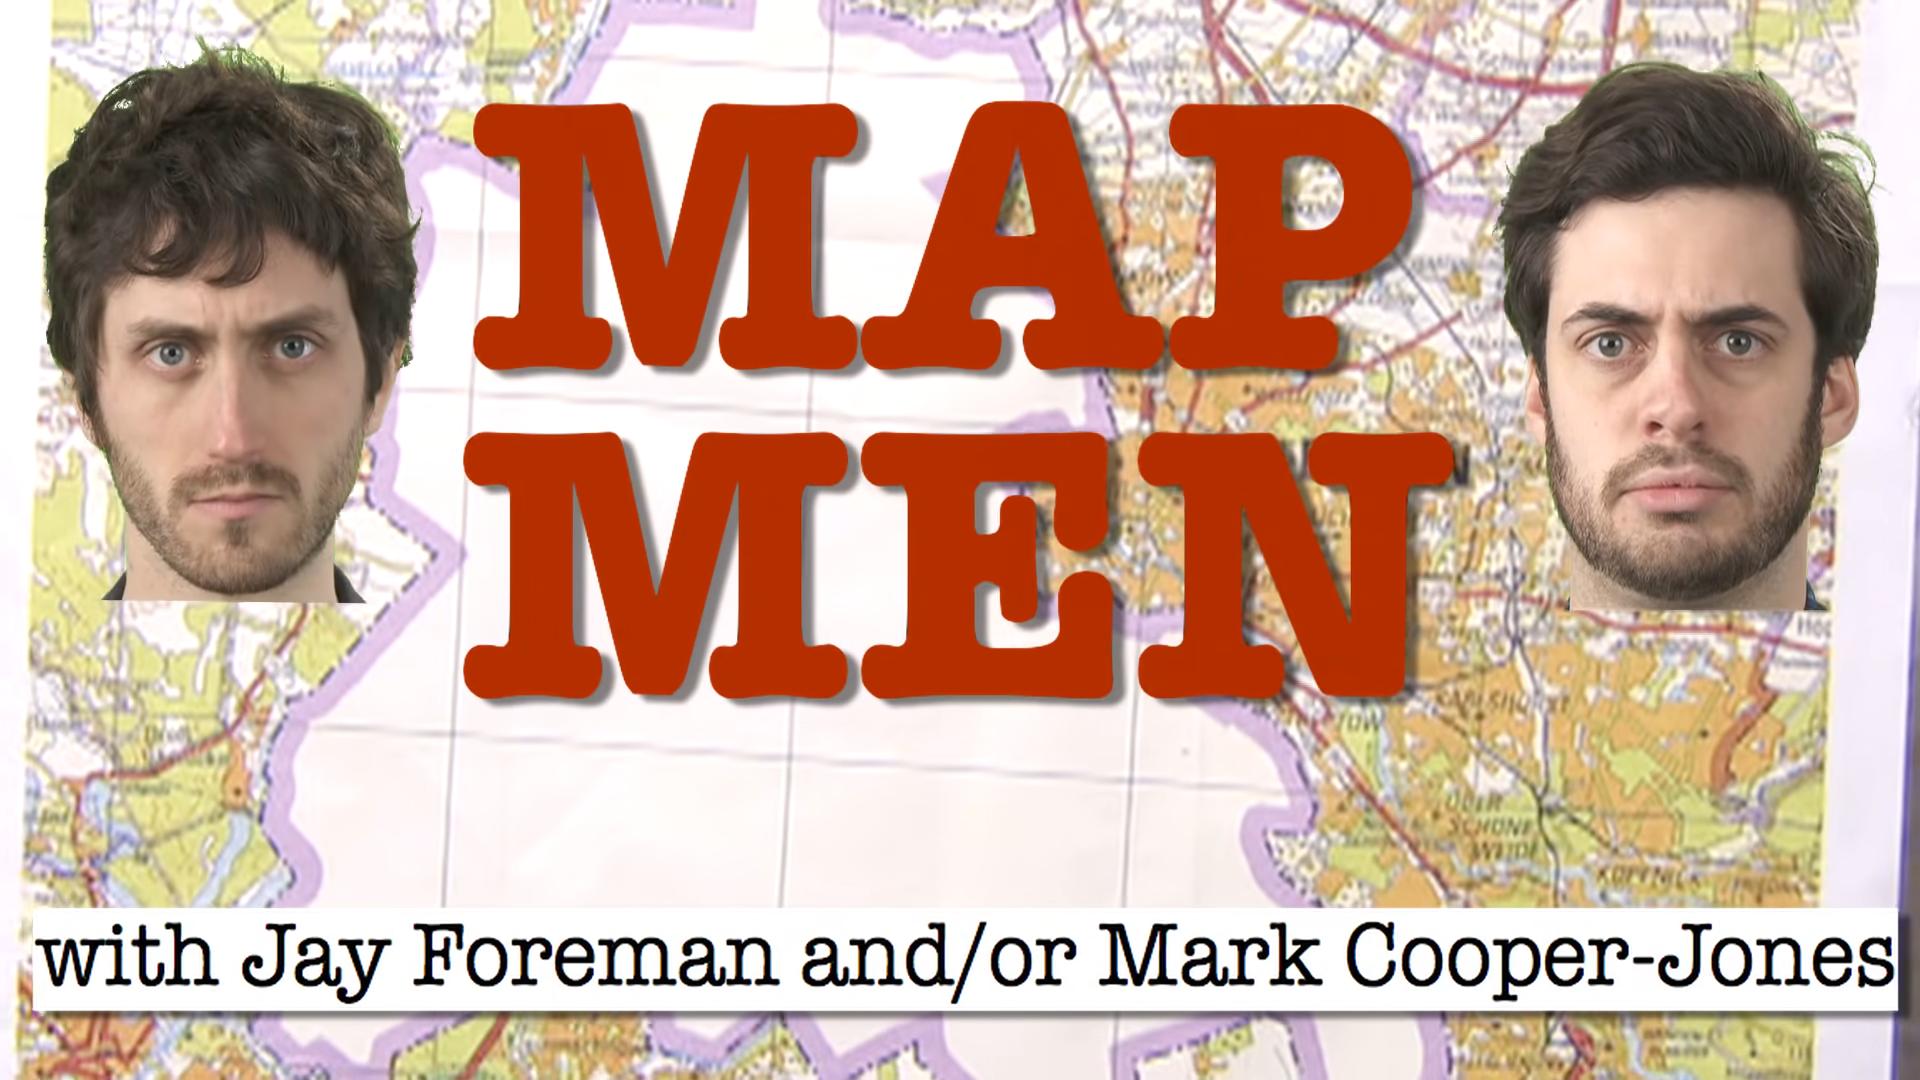 Youtube Rabbit holes - map men - Map Men N N Arlshort Oor Schone Wede with Jay Foreman andor Mark CooperJones